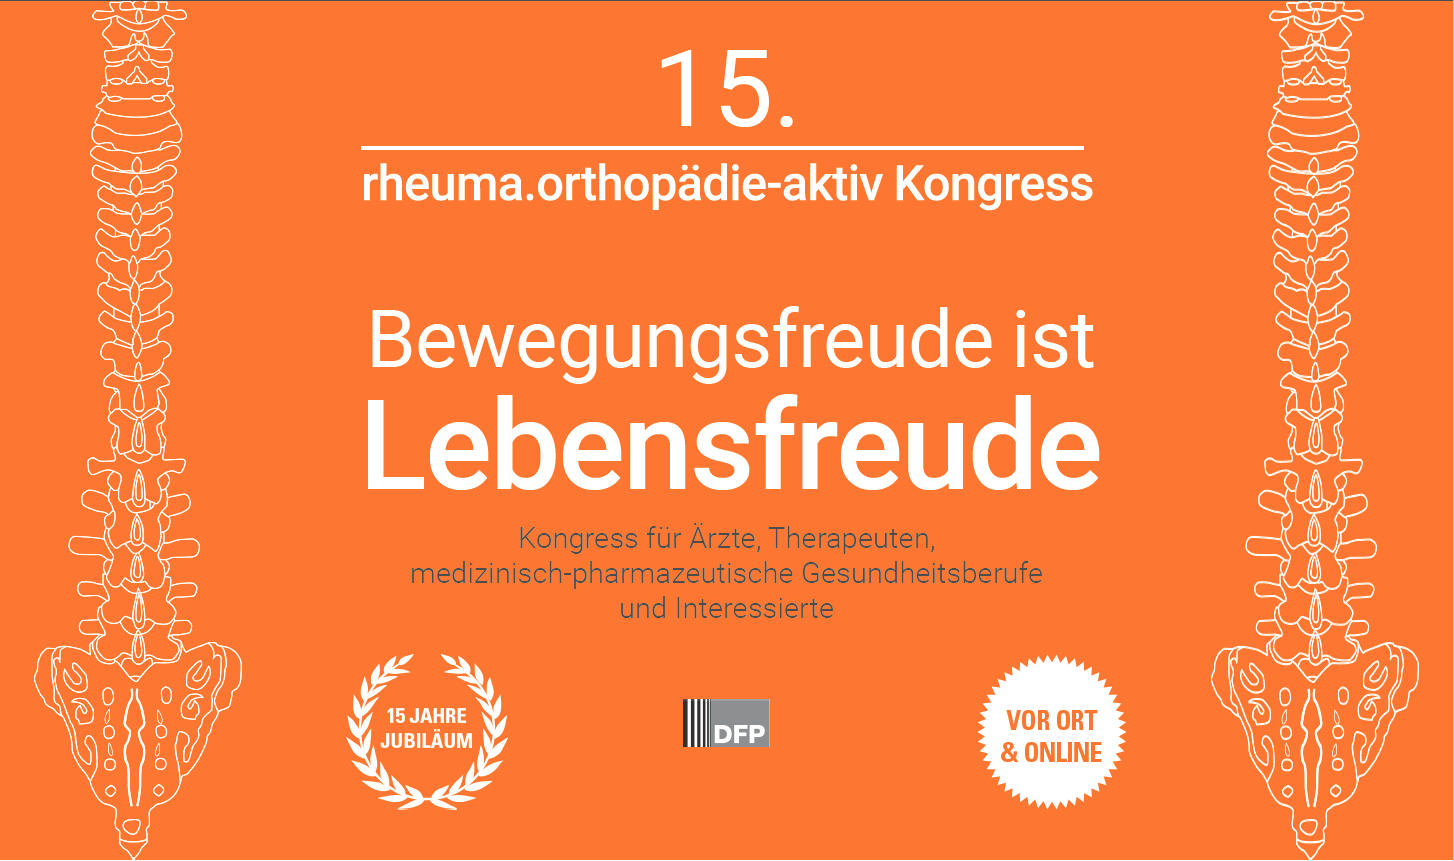 15. rheuma.orthopädie-aktiv Kongress